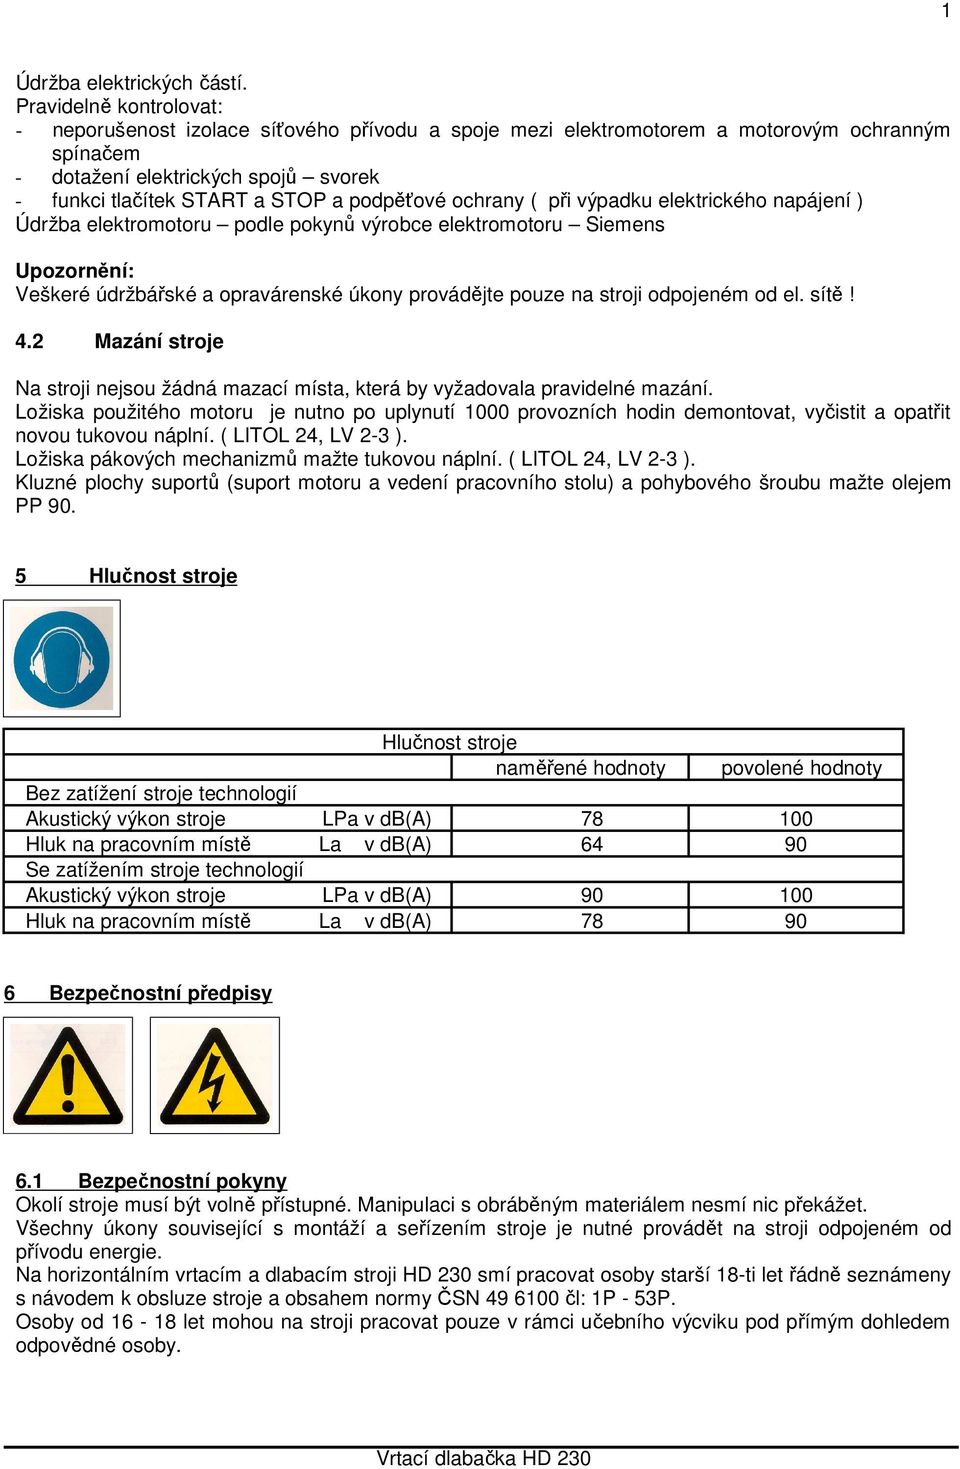 podpěťové ochrany ( při výpadku elektrického napájení ) Údržba elektromotoru podle pokynů výrobce elektromotoru Siemens Upozornění: Veškeré údržbářské a opravárenské úkony provádějte pouze na stroji